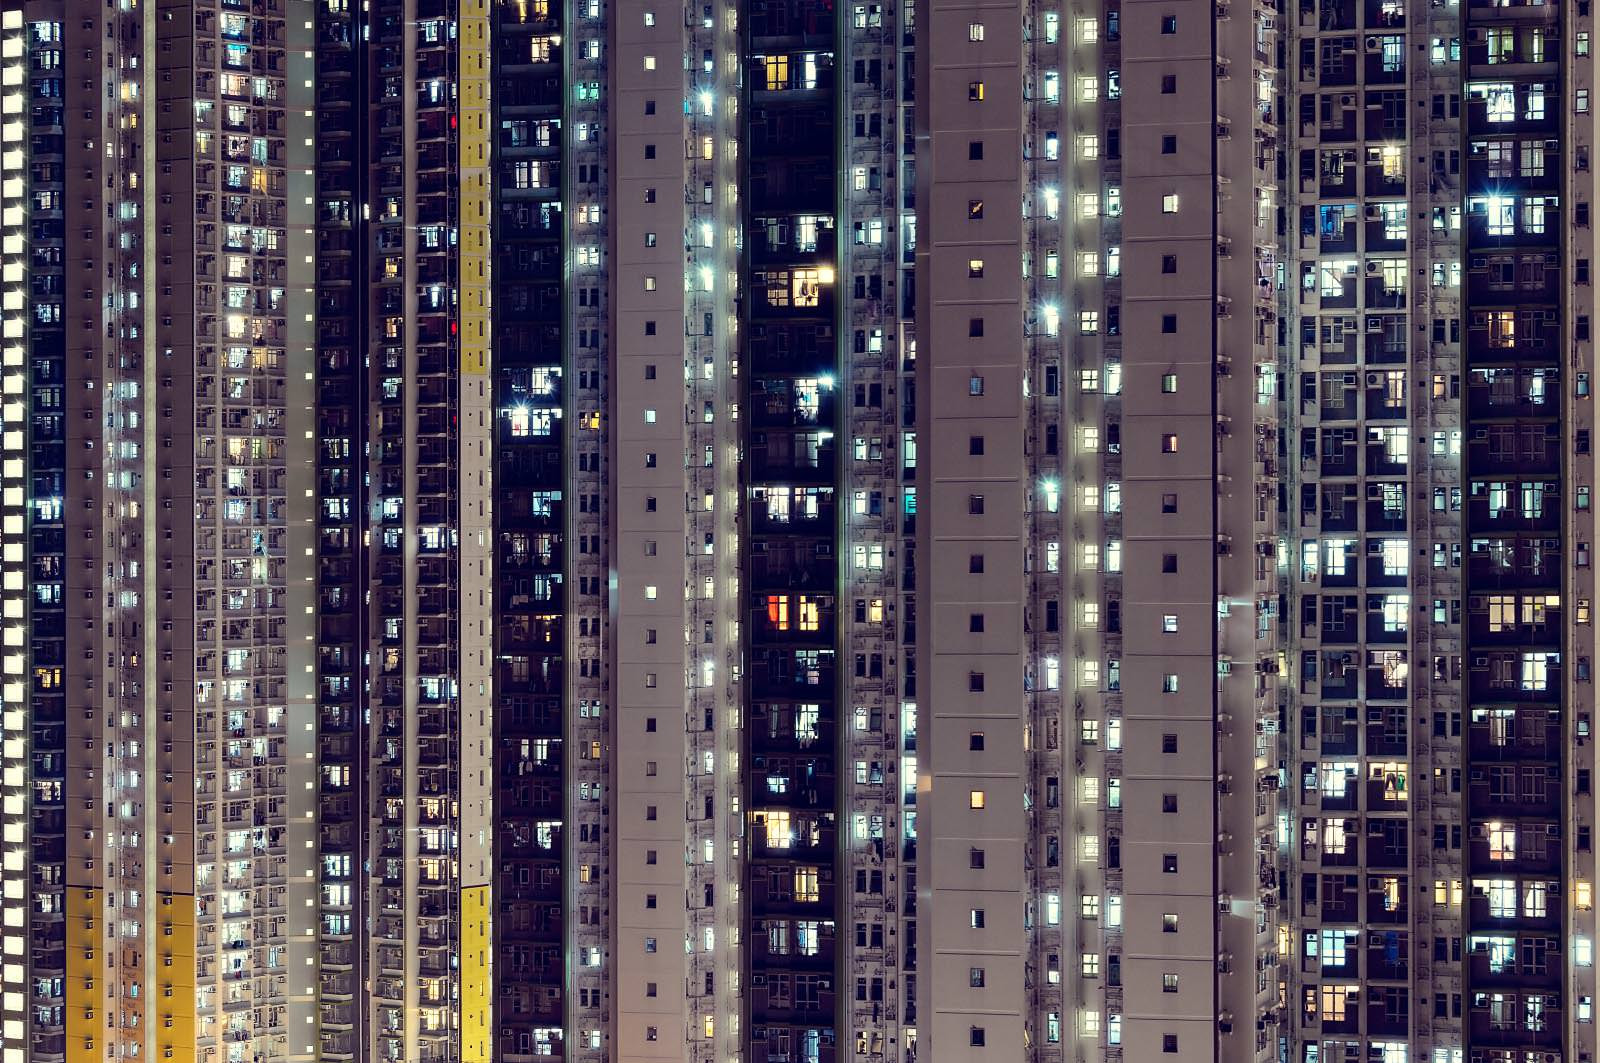 Nachtaufnahme aus Kowloon